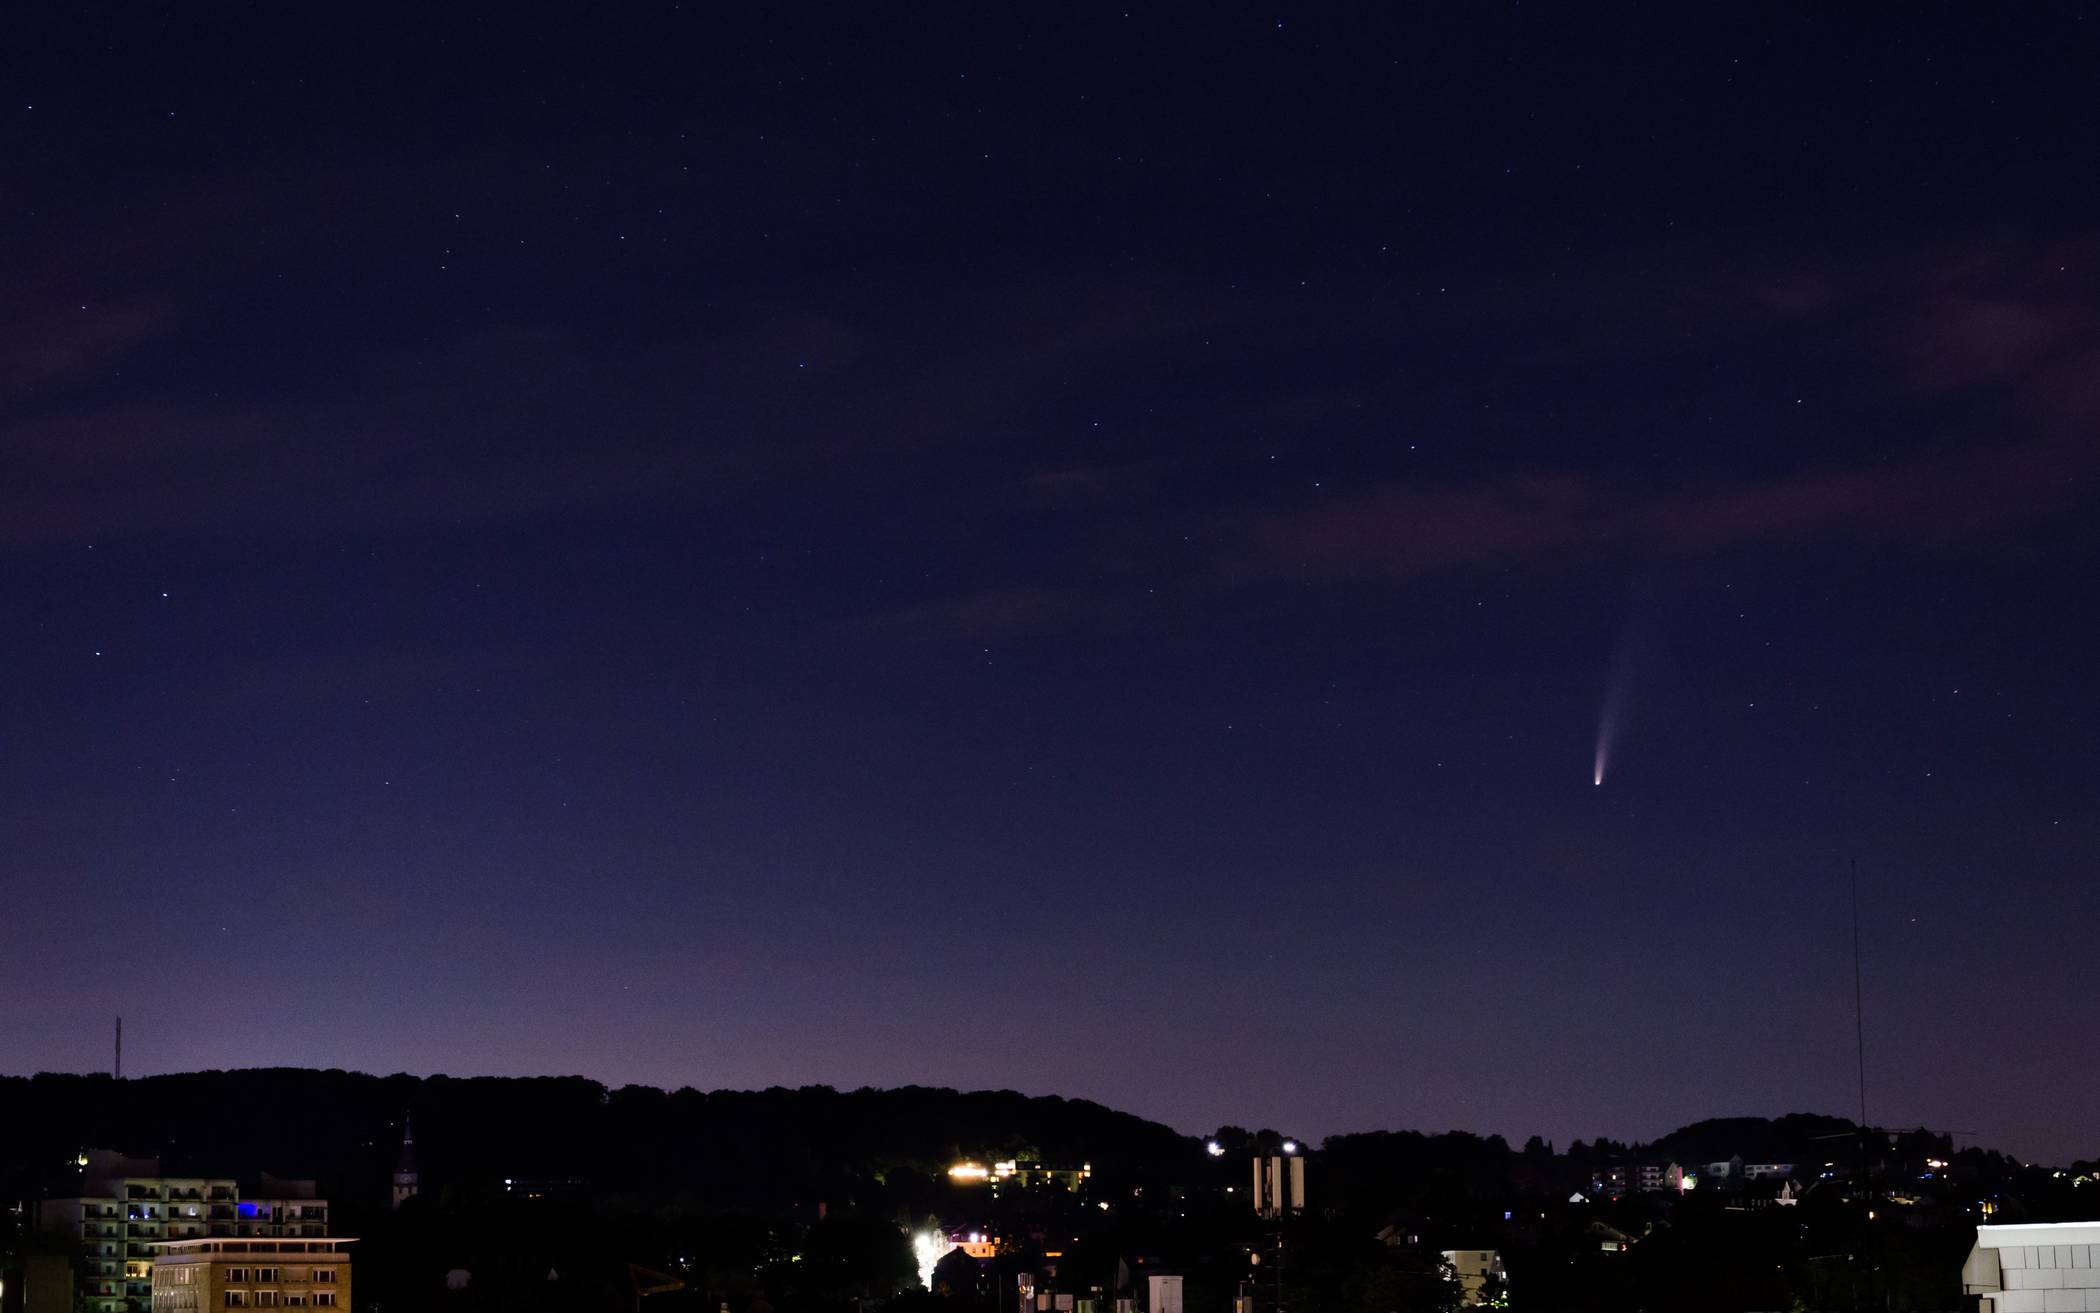  Per Langzeitbelichtung ist der Komet samt Schweif gut zu sehen. 